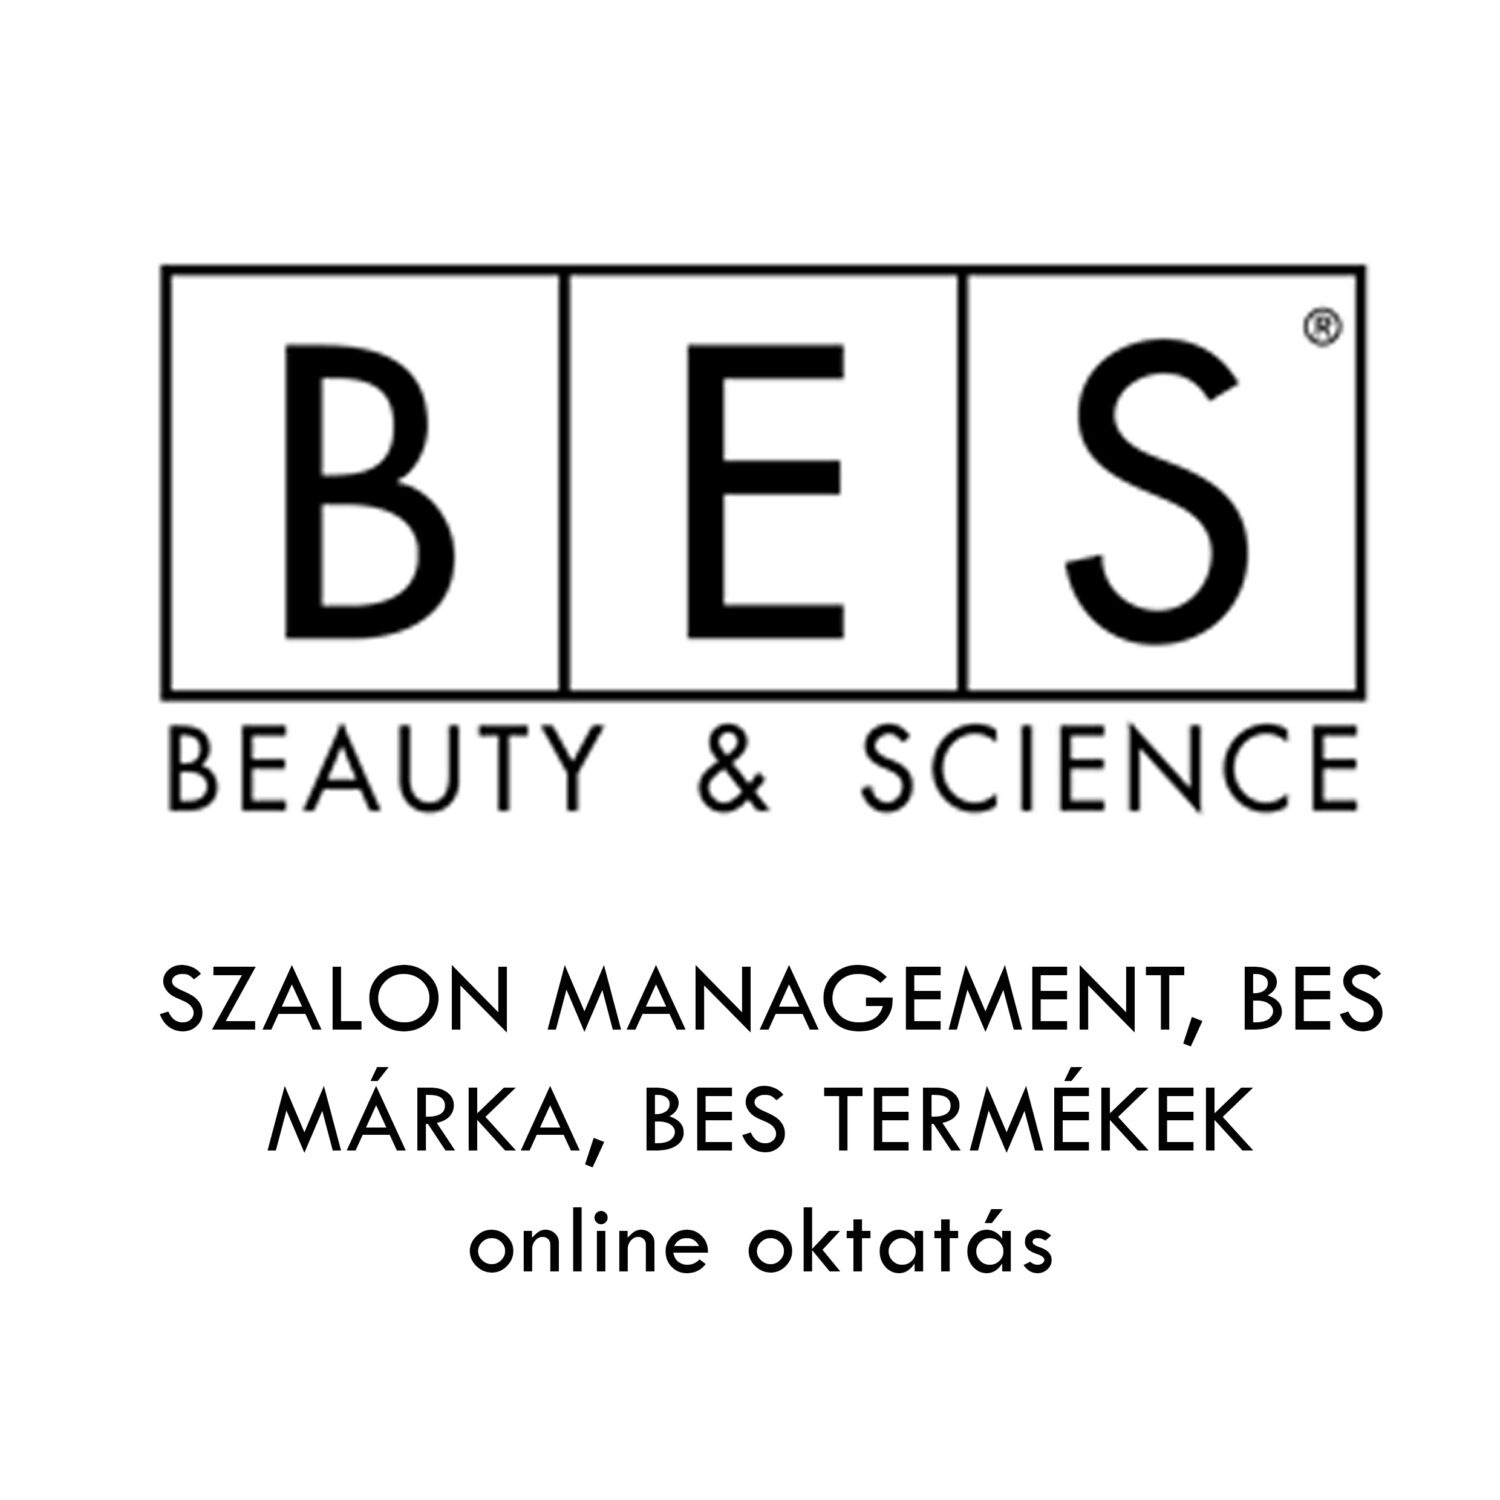 Szalon management, BES márka és termékek online oktatás